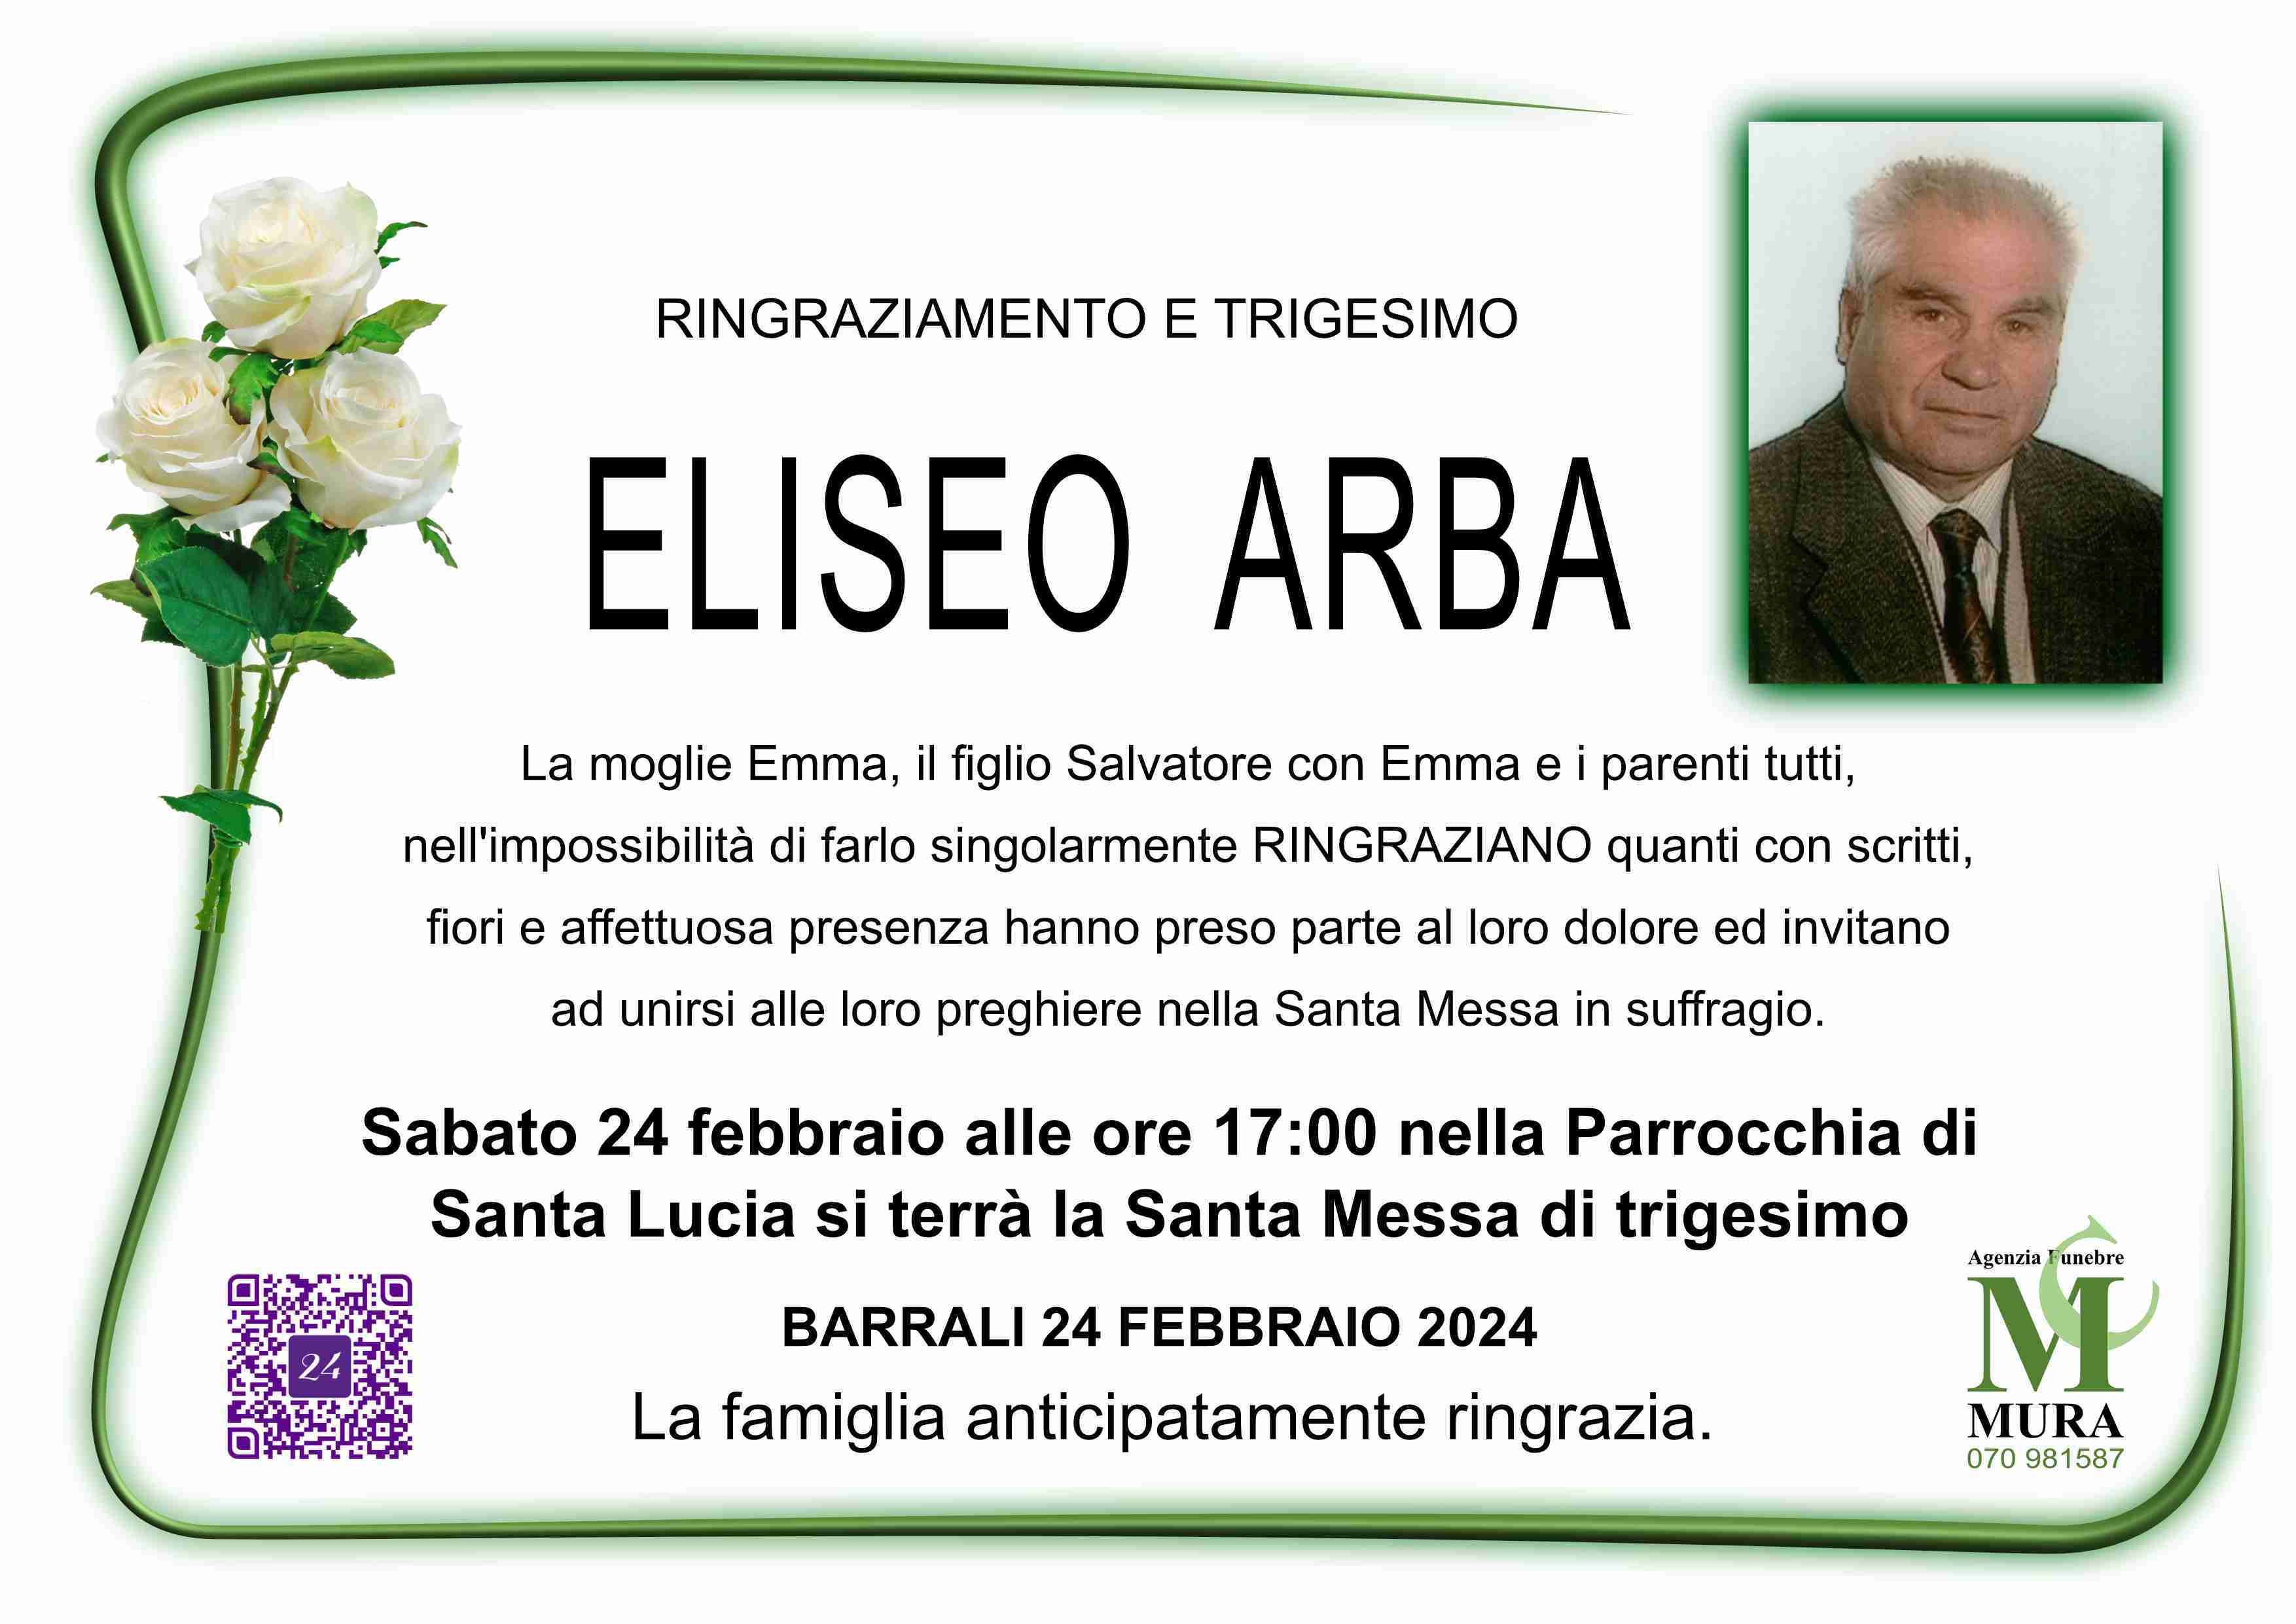 Eliseo Arba